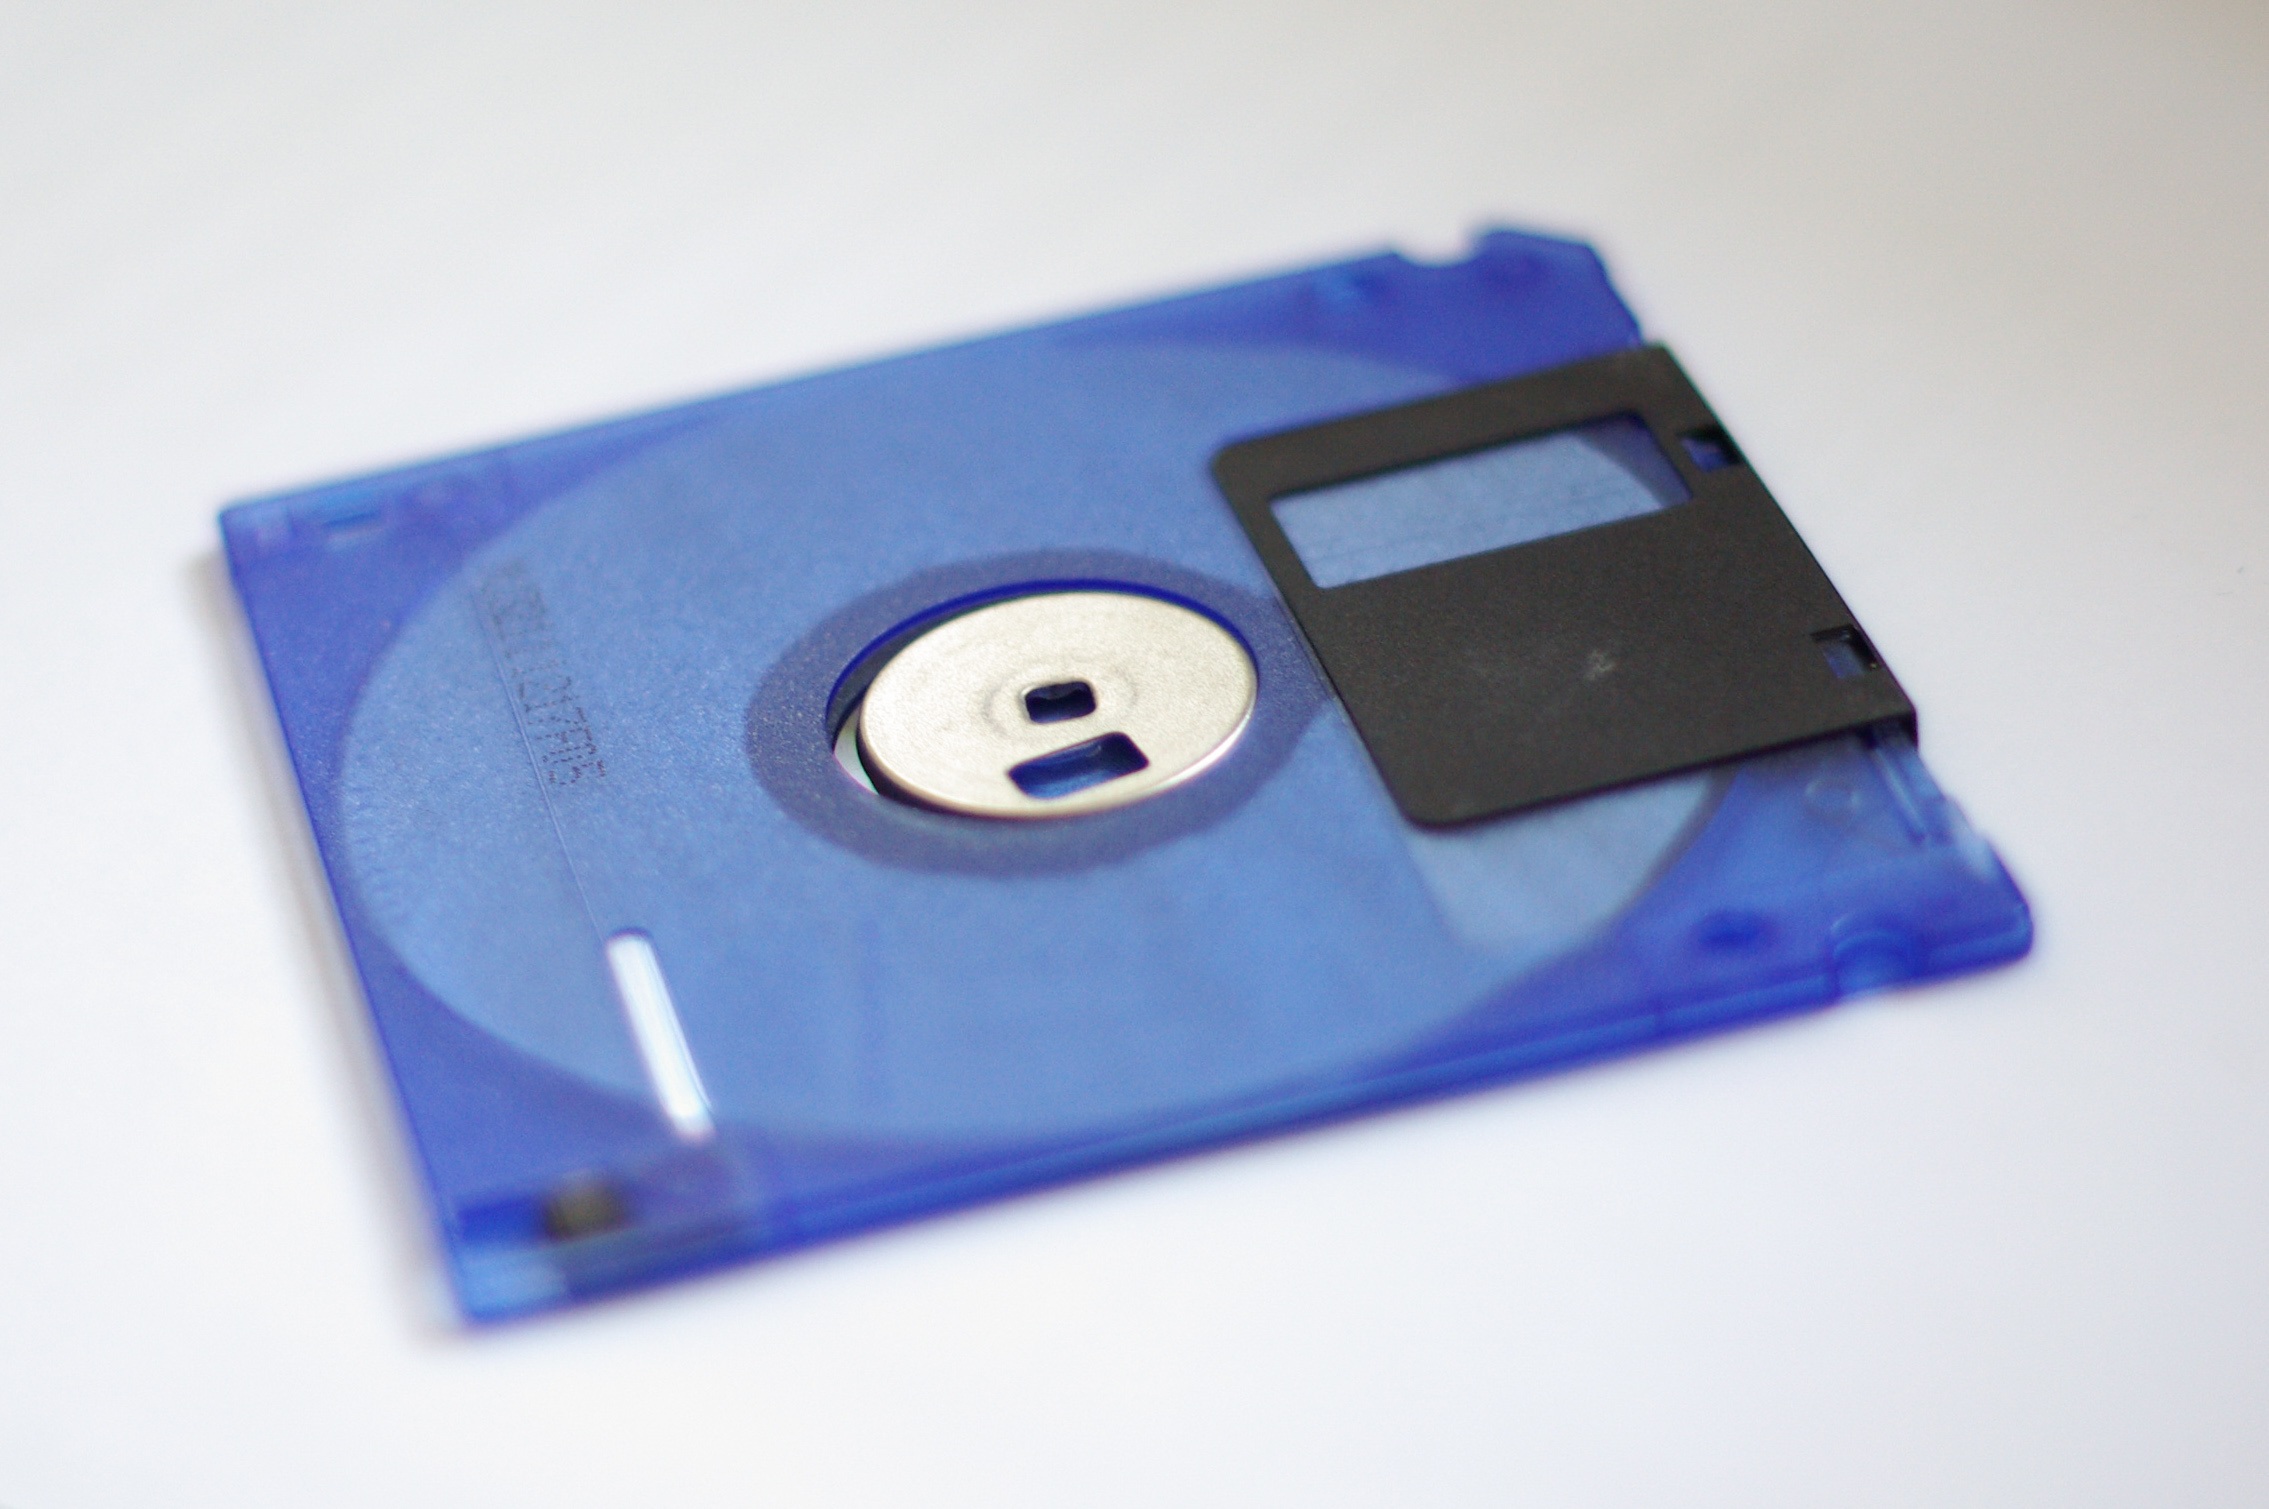 file format floppy disk